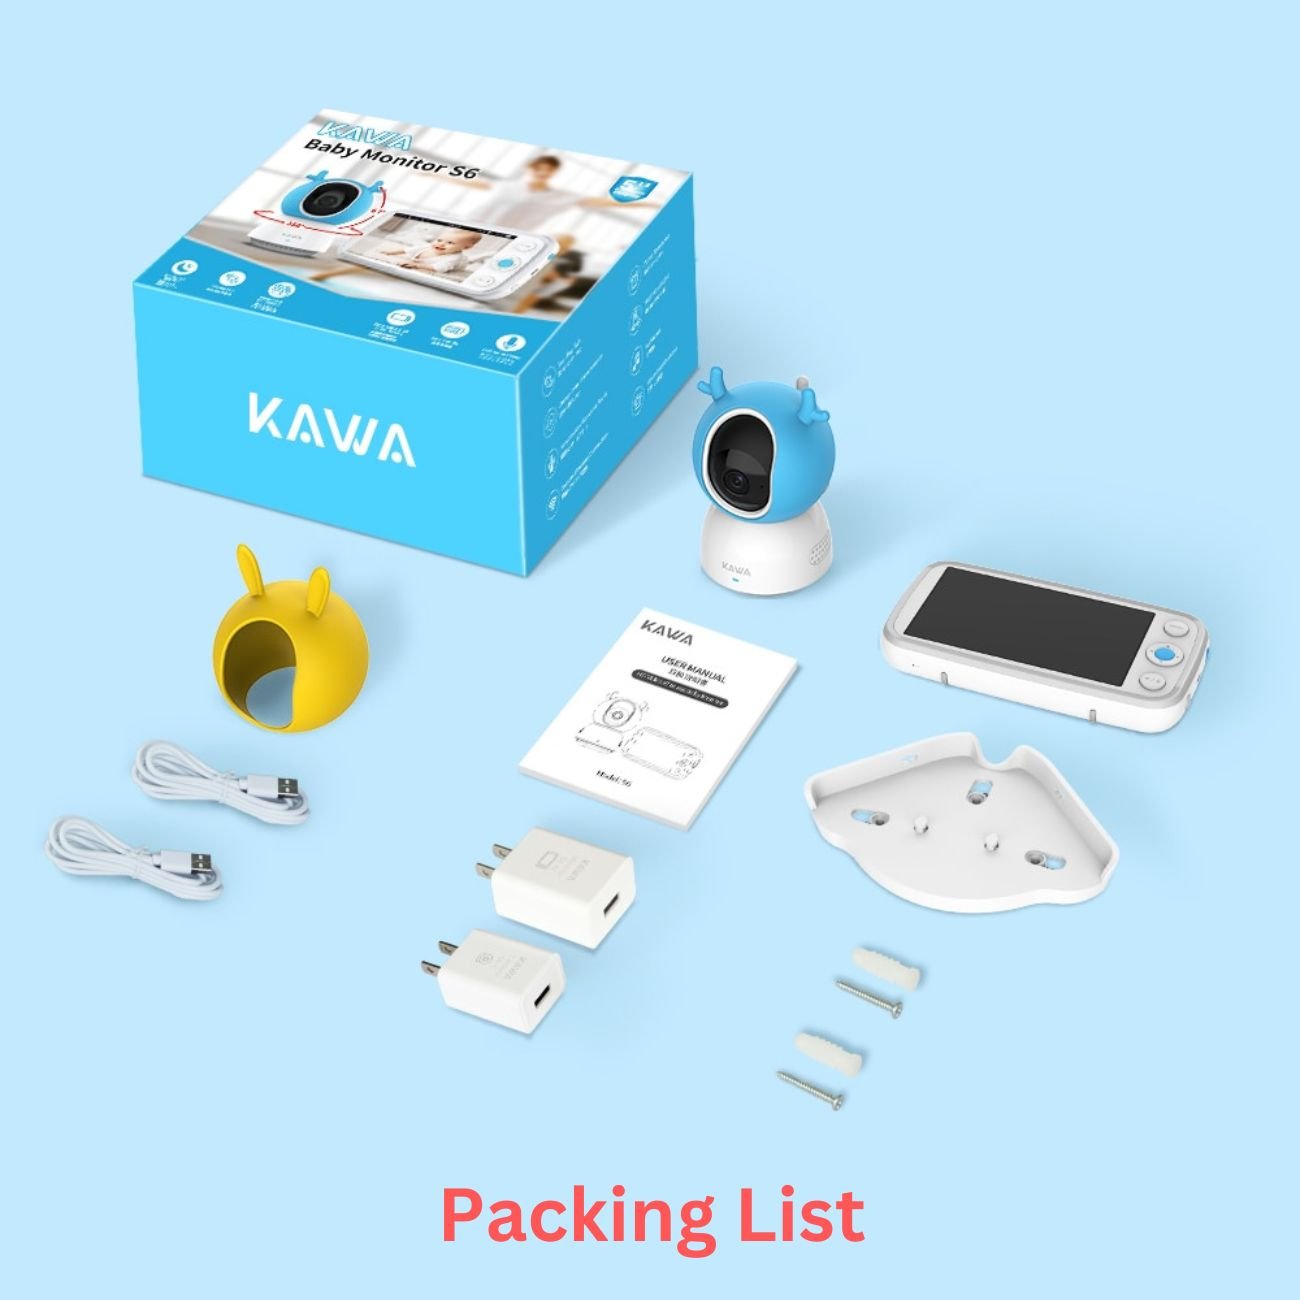 KAWA 5" Baby Monitor and Camera 720P HD (S6)